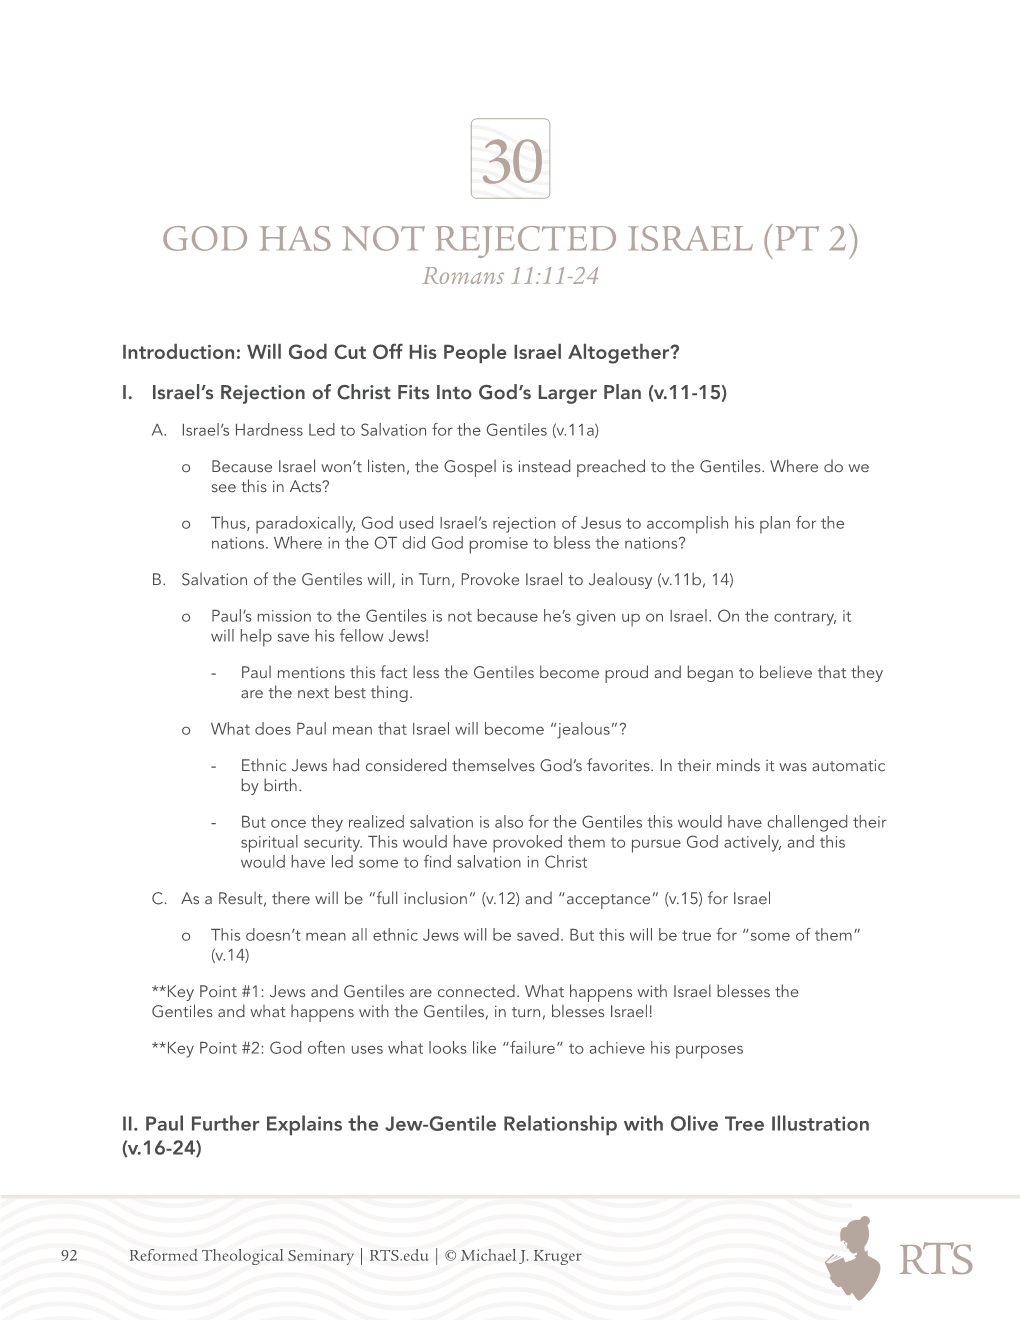 GOD HAS NOT REJECTED ISRAEL (PT 2) Romans 11:11-24